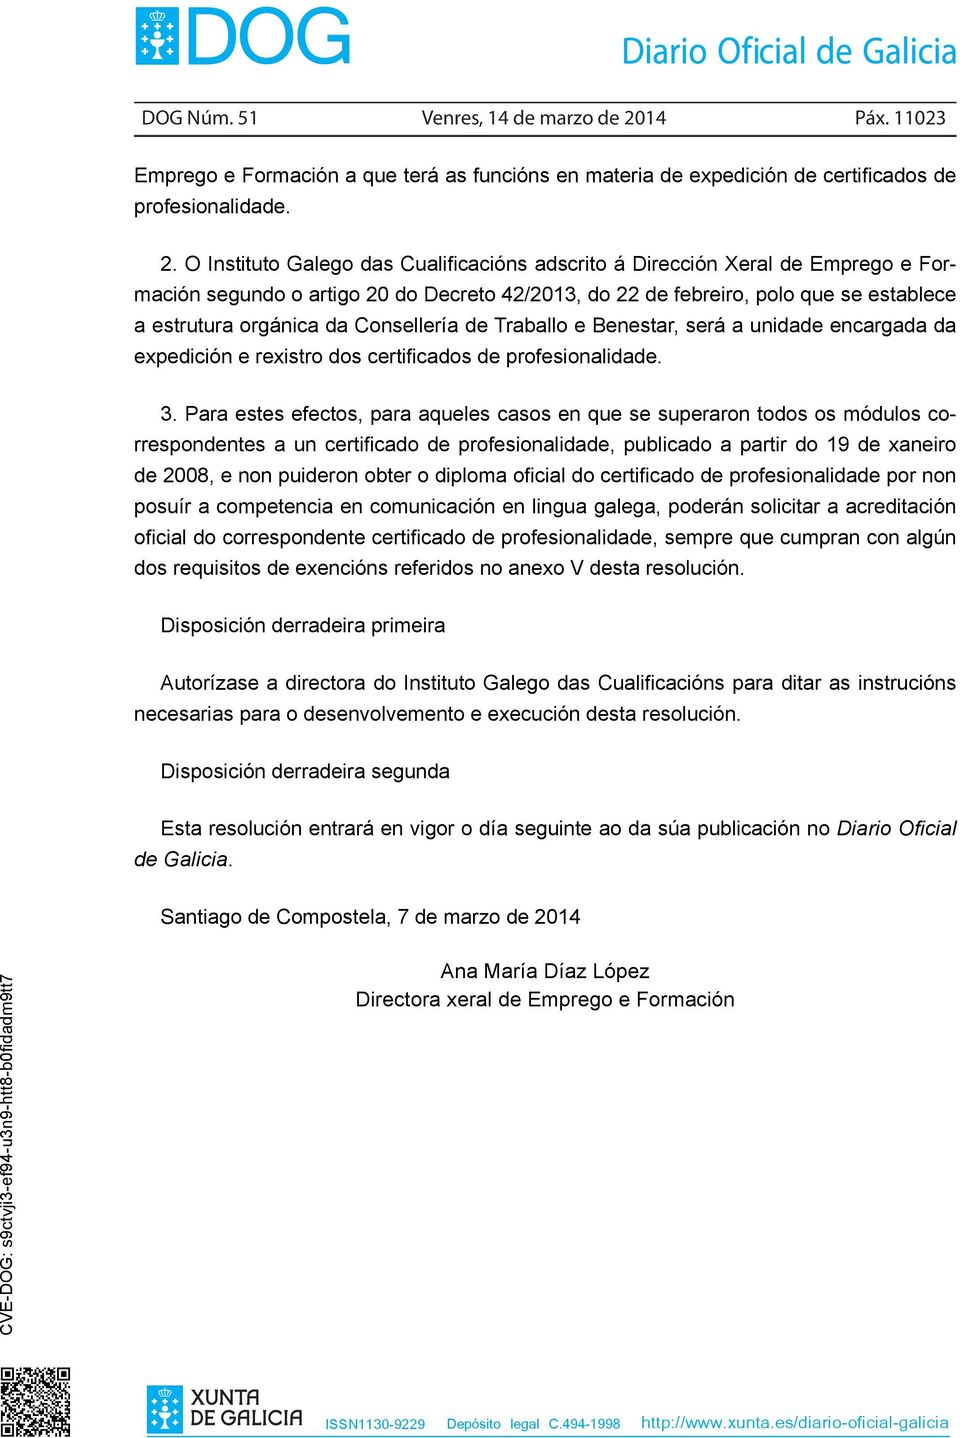 O Instituto Galego das Cualificacións adscrito á Dirección Xeral de Emprego e Formación segundo o artigo 20 do Decreto 42/2013, do 22 de febreiro, polo que se establece a estrutura orgánica da